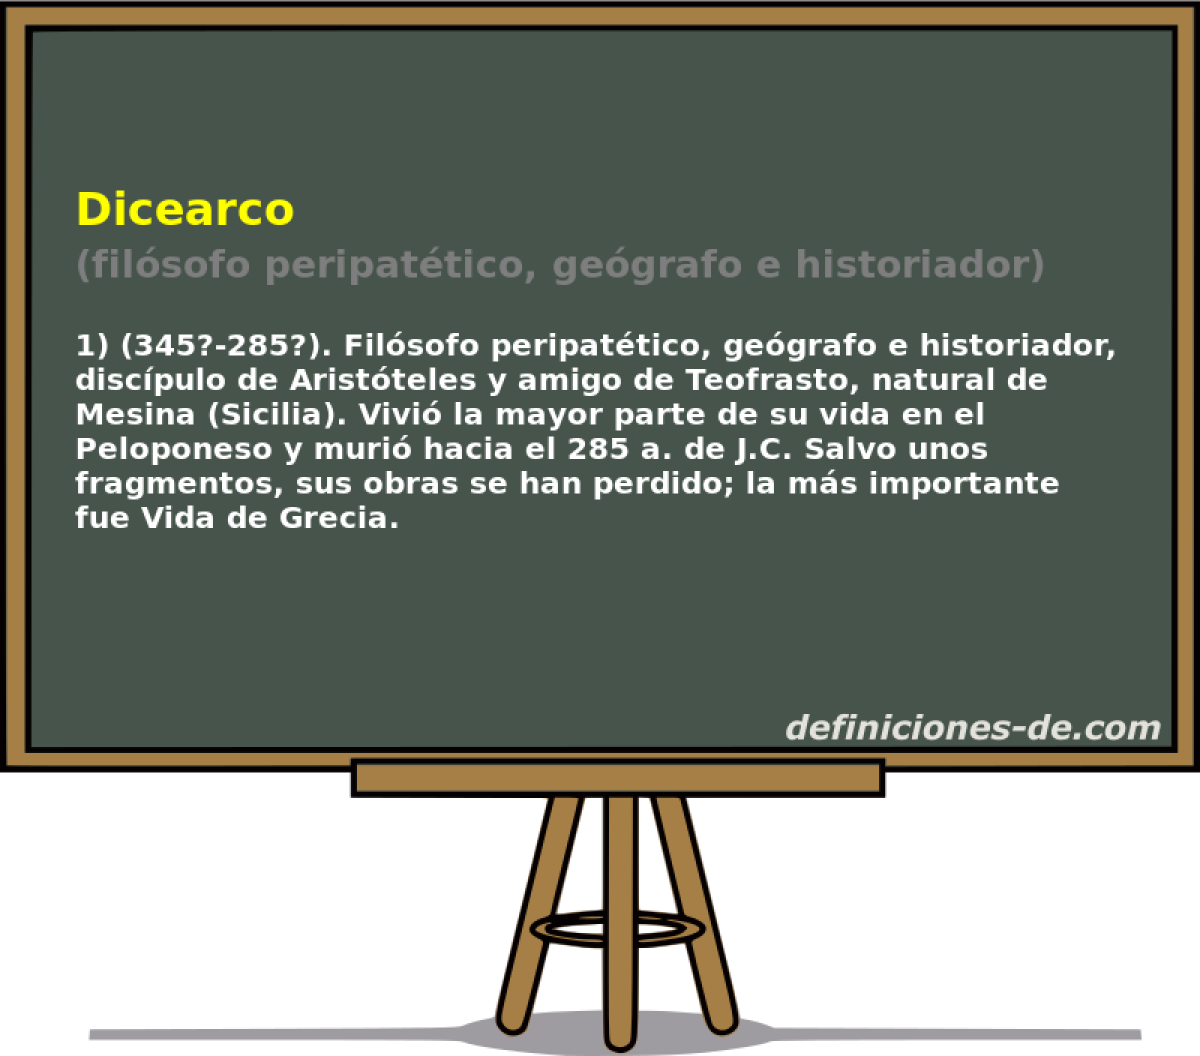 Dicearco (filsofo peripattico, gegrafo e historiador)